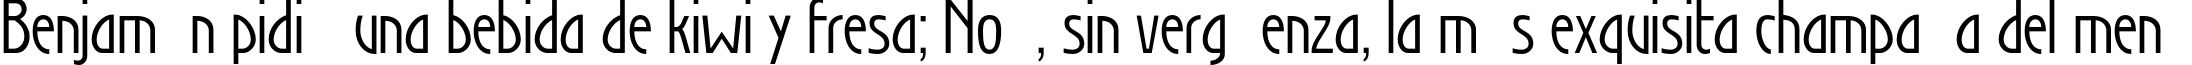 Пример написания шрифтом Secession текста на испанском